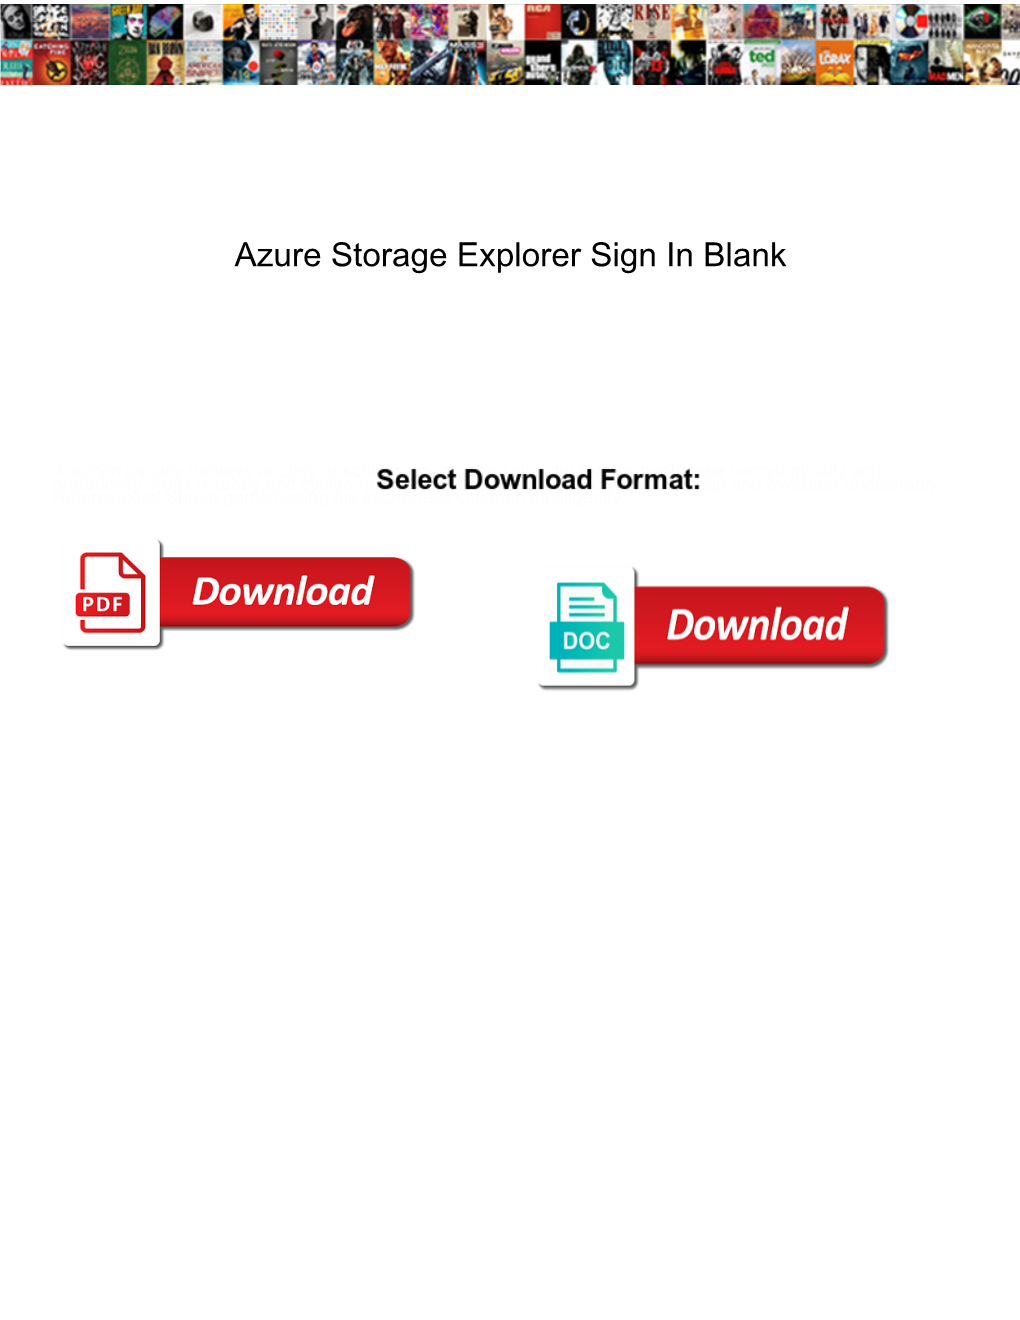 Azure Storage Explorer Sign in Blank